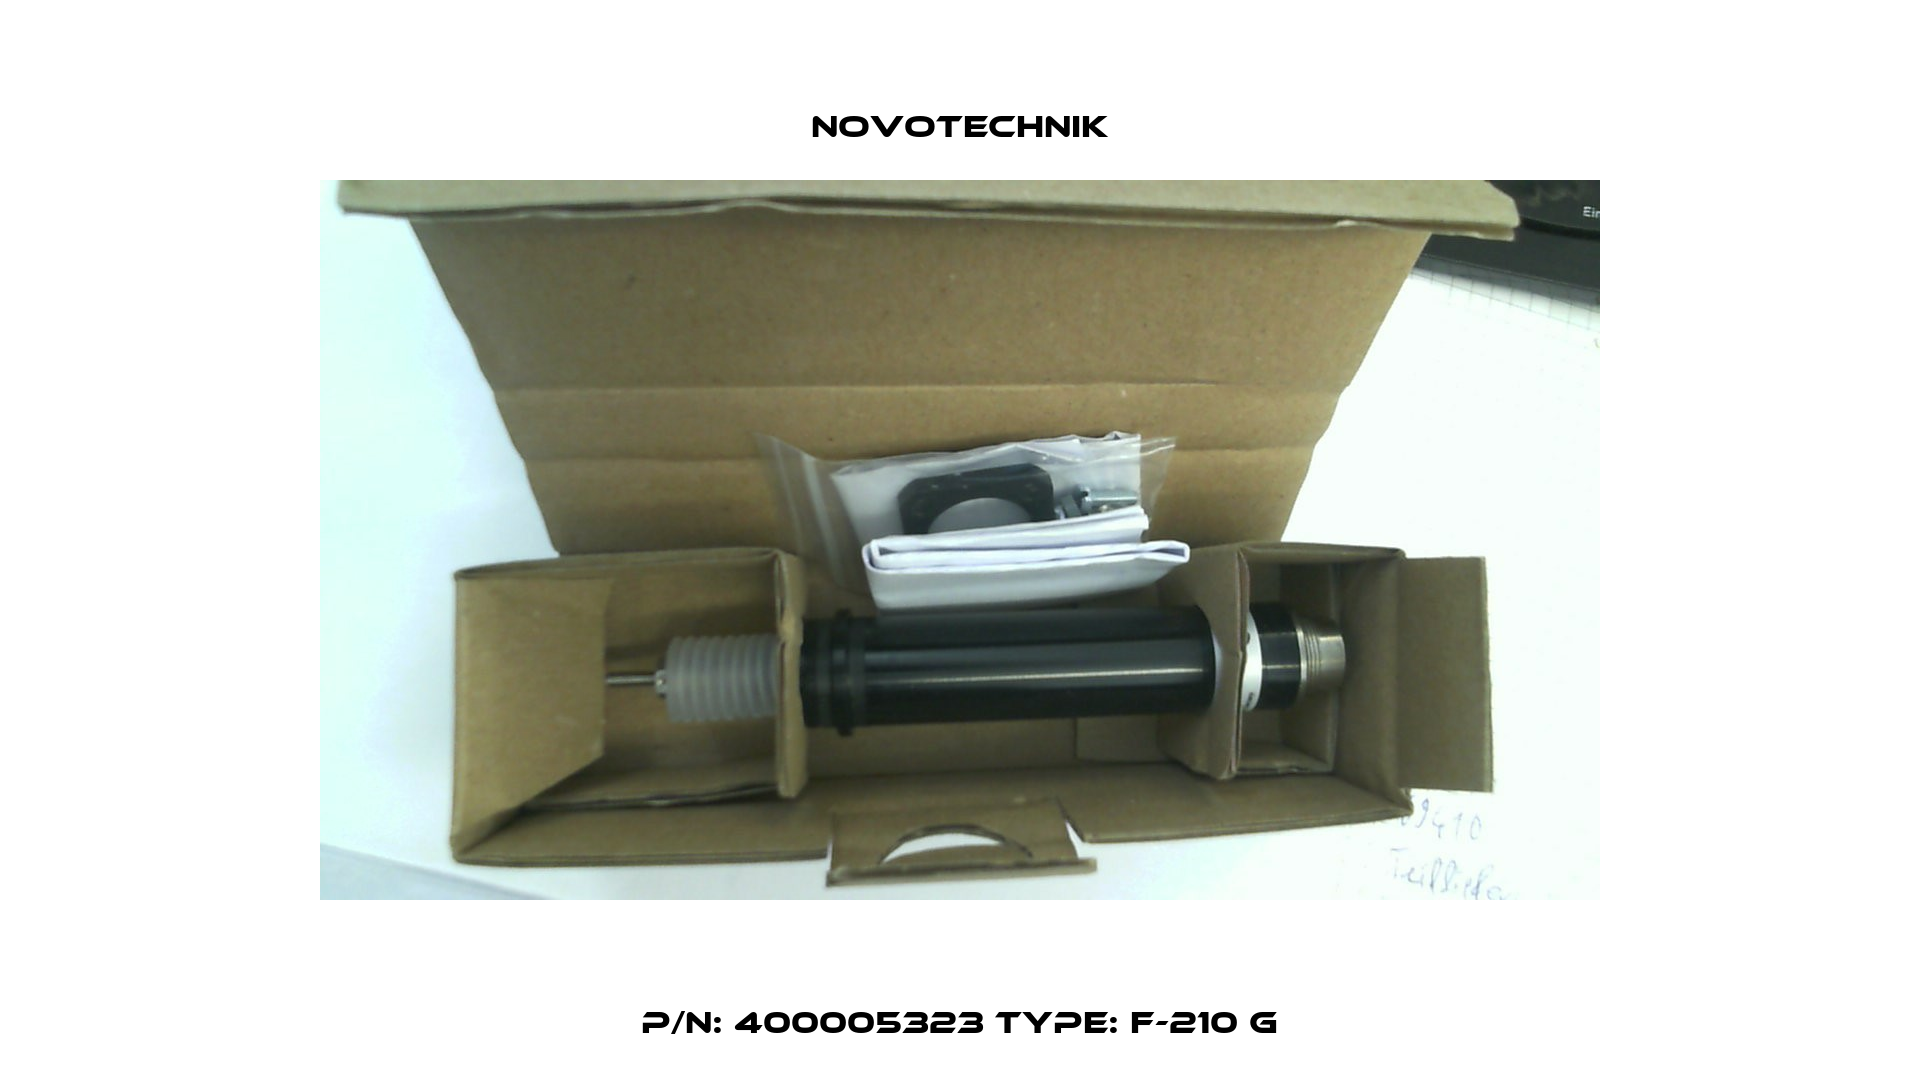 P/N: 400005323 Type: F-210 G Novotechnik